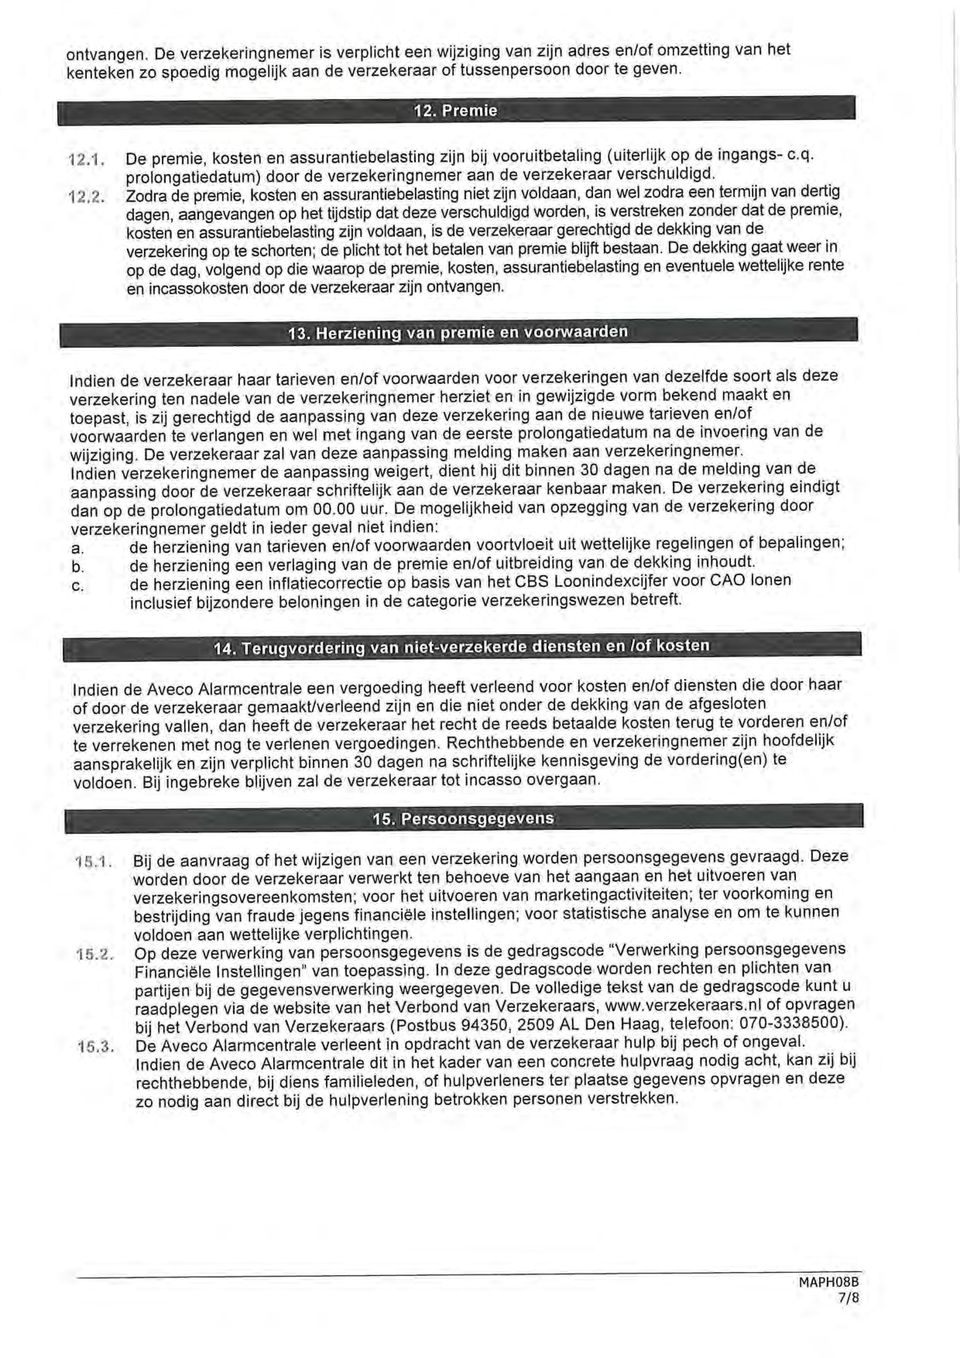 1. De premie, kosten en assurantiebelasting zijn bij vooruitbetaling (uiterlijk op de ingangs- c.q. prolongatiedatum) door de verzekeringnemer aan de verzekeraar verschuldigd. 12.